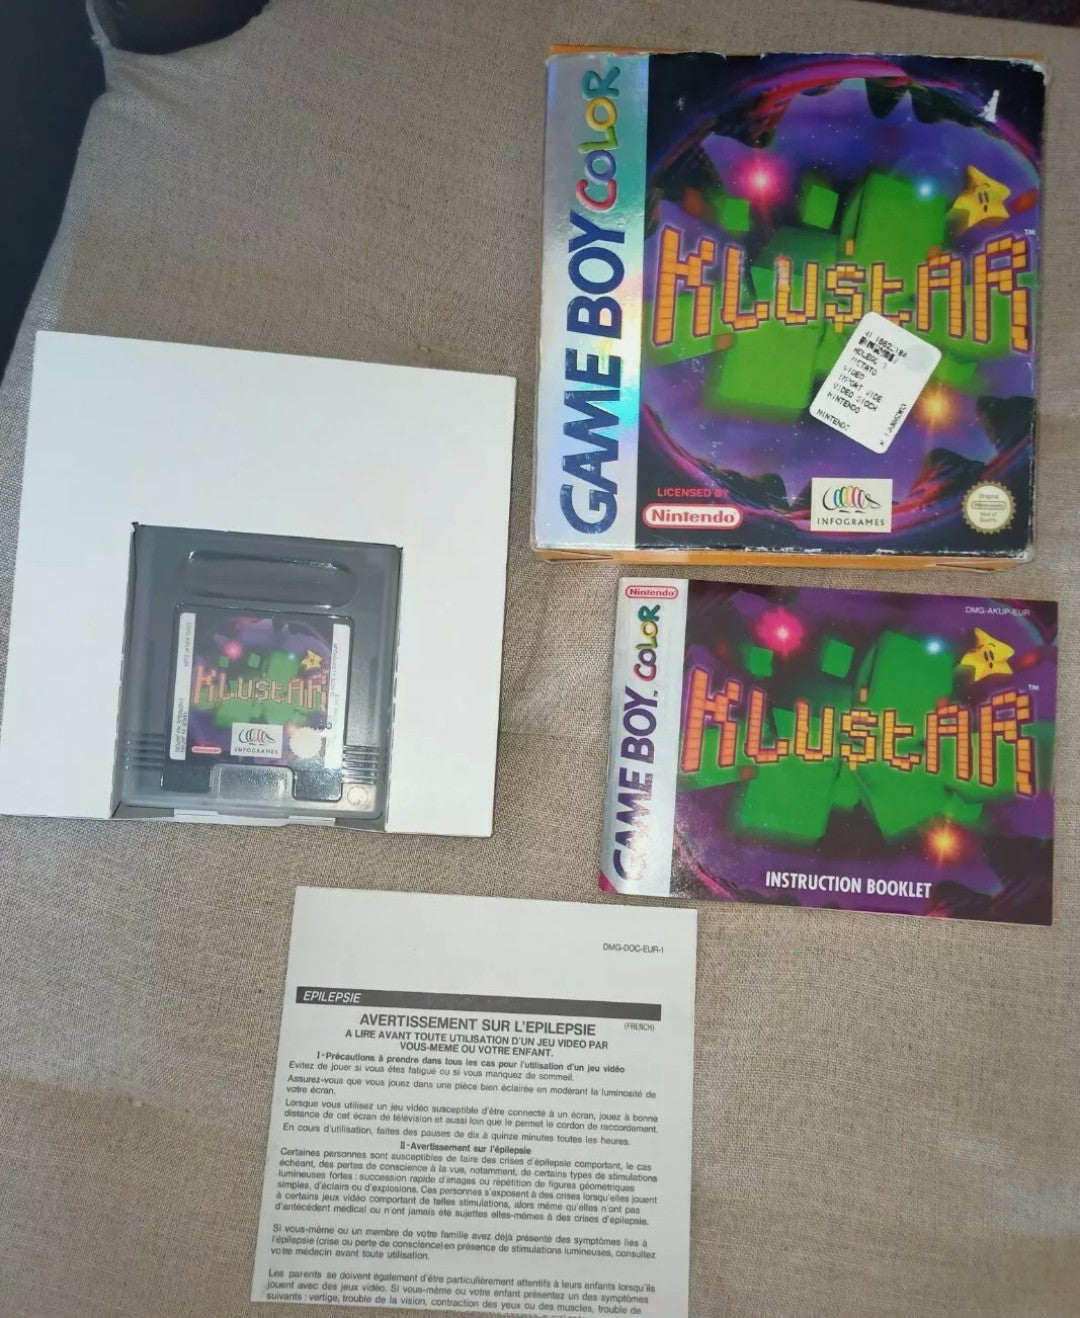 Klustar video game for Game Boy Color